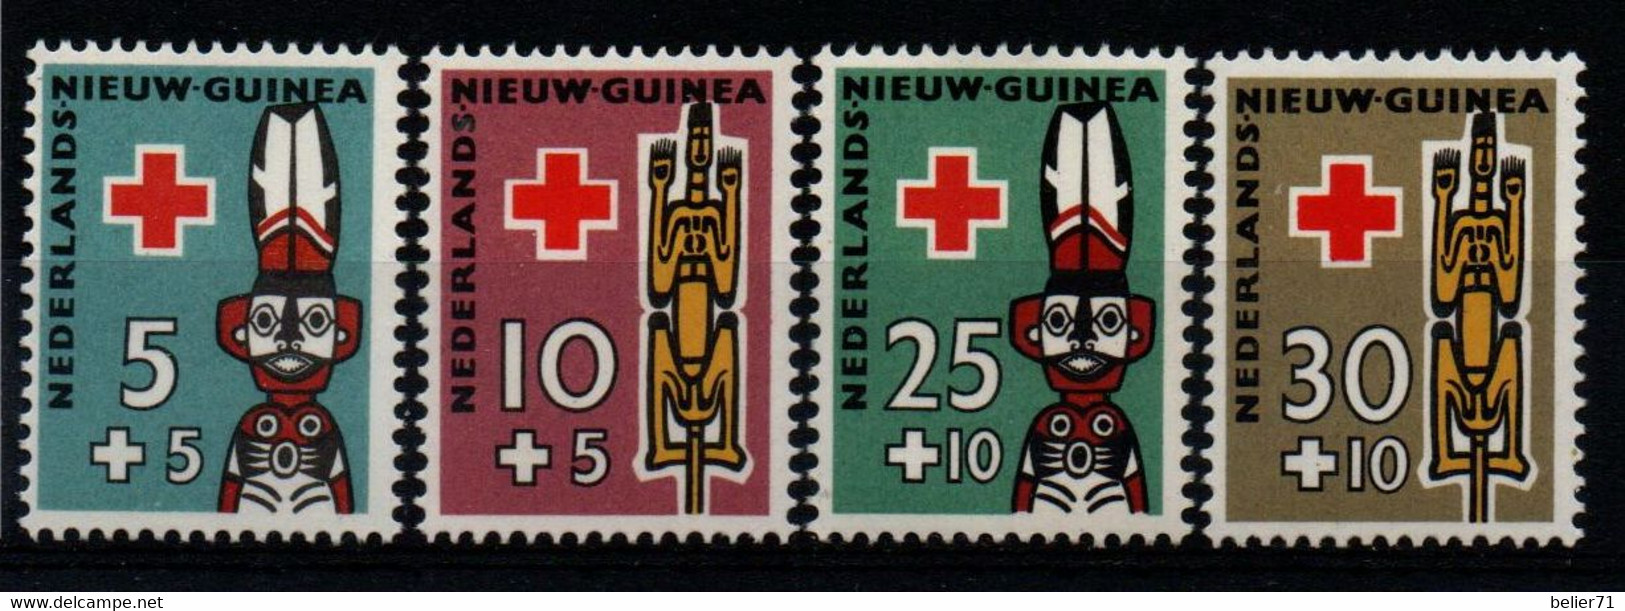 Pays Bas : Nouvelle Guinée N° 47 à 50 Xx Neufs Sans Trace De Charnière Année 1955 - Nederlands Nieuw-Guinea